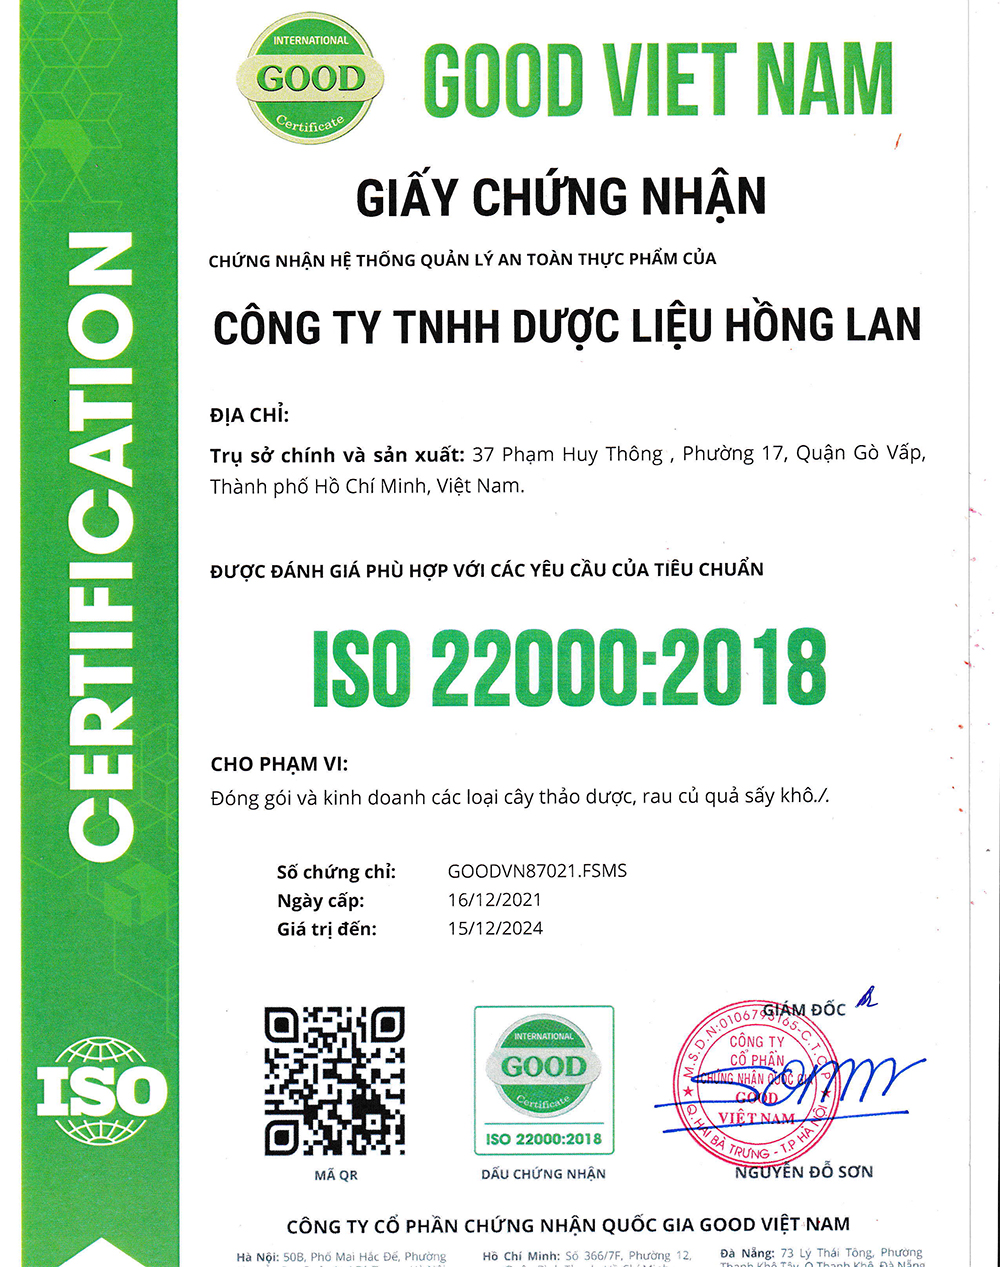 Trà túi lọc Cây Rau Má & Cà Gai Leo được sản xuất bởi Công ty TNHH Dược Liệu Hồng Lan theo hệ thống quản lý an toàn thực phẩm ISO 22000:2018 được cấp bởi công ty cổ phần chứng nhận Quốc Gia Good Việt Nam (Good Viet Nam Certification Joint Stock Company)